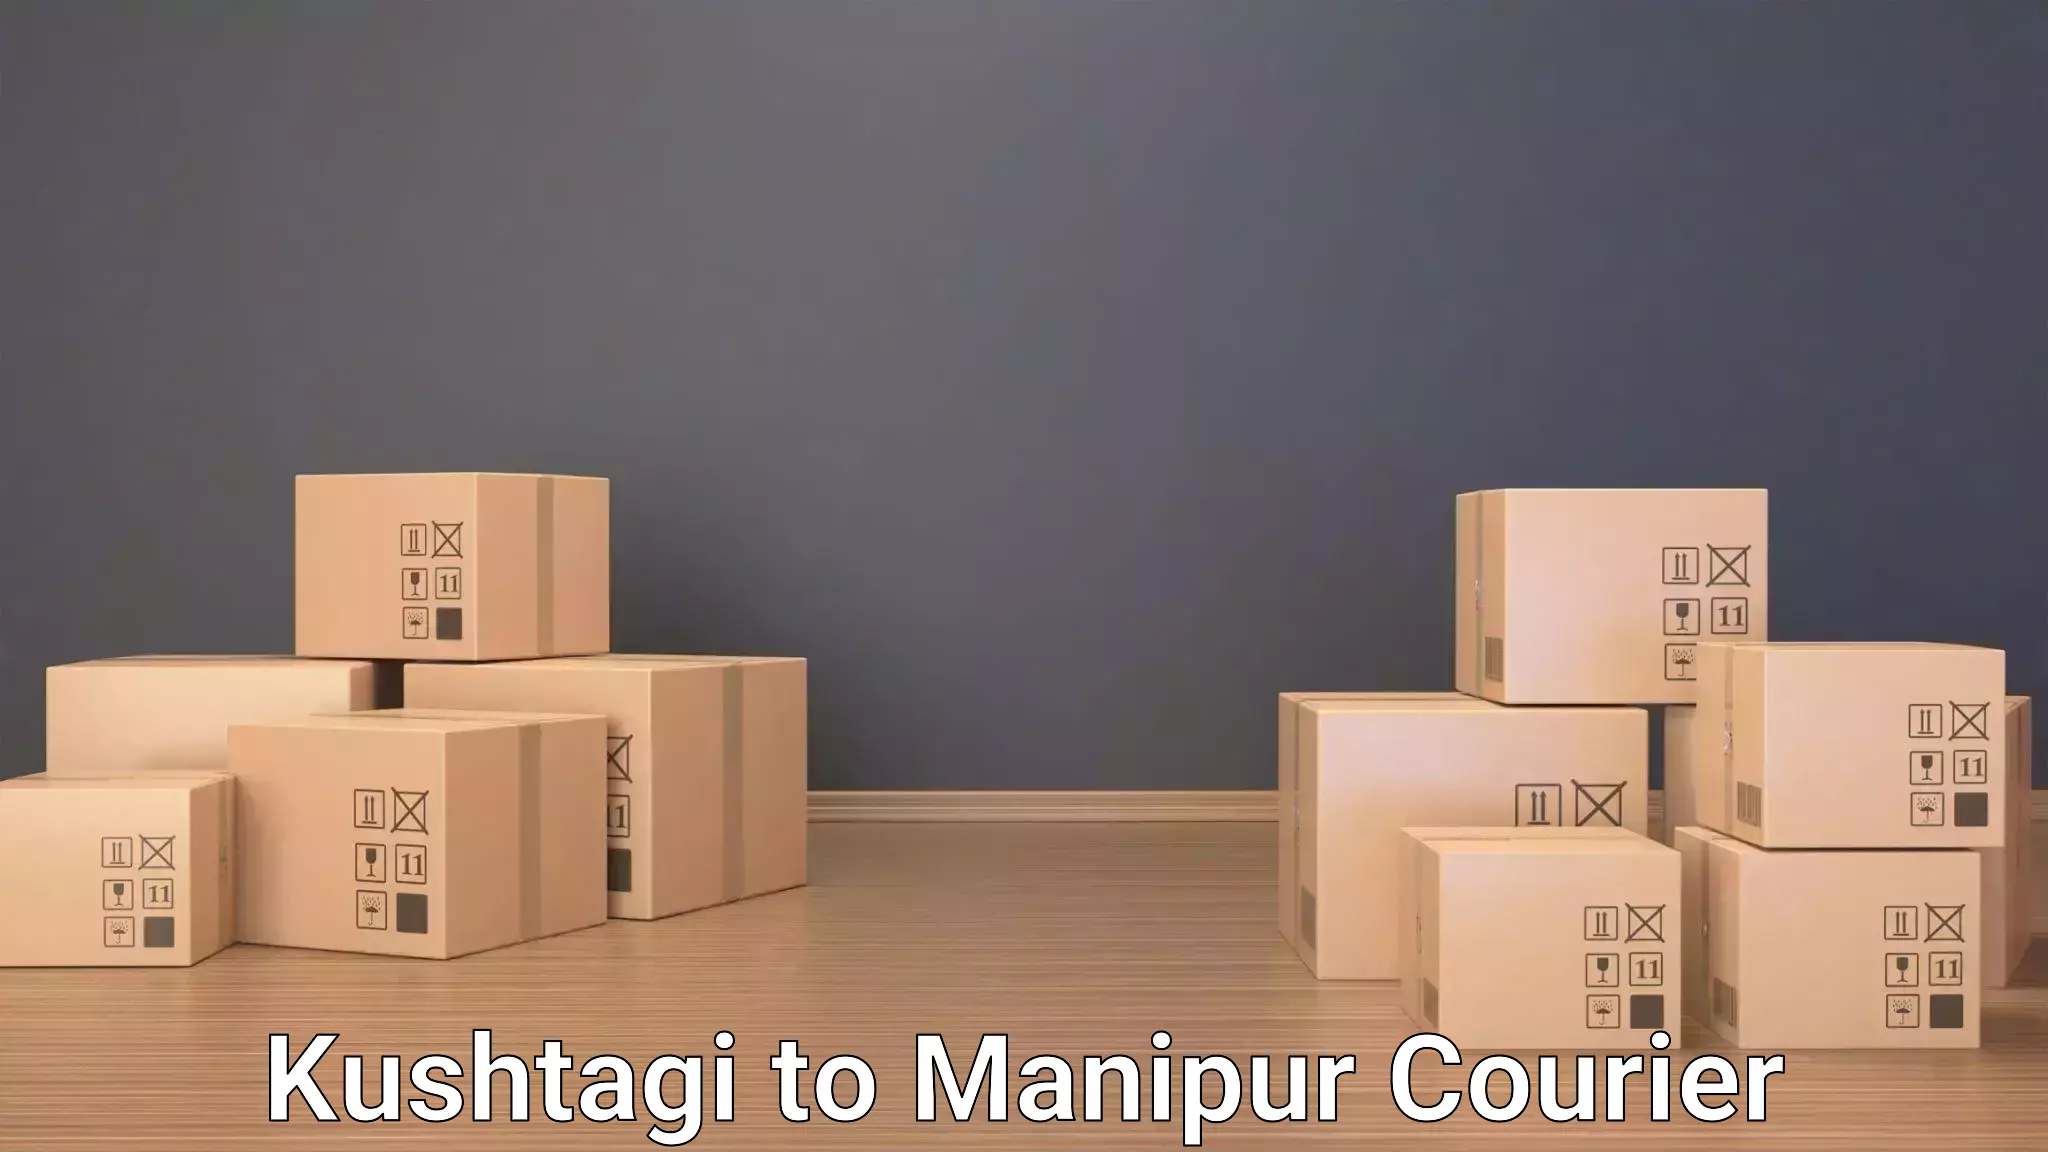 Luggage delivery app Kushtagi to Manipur